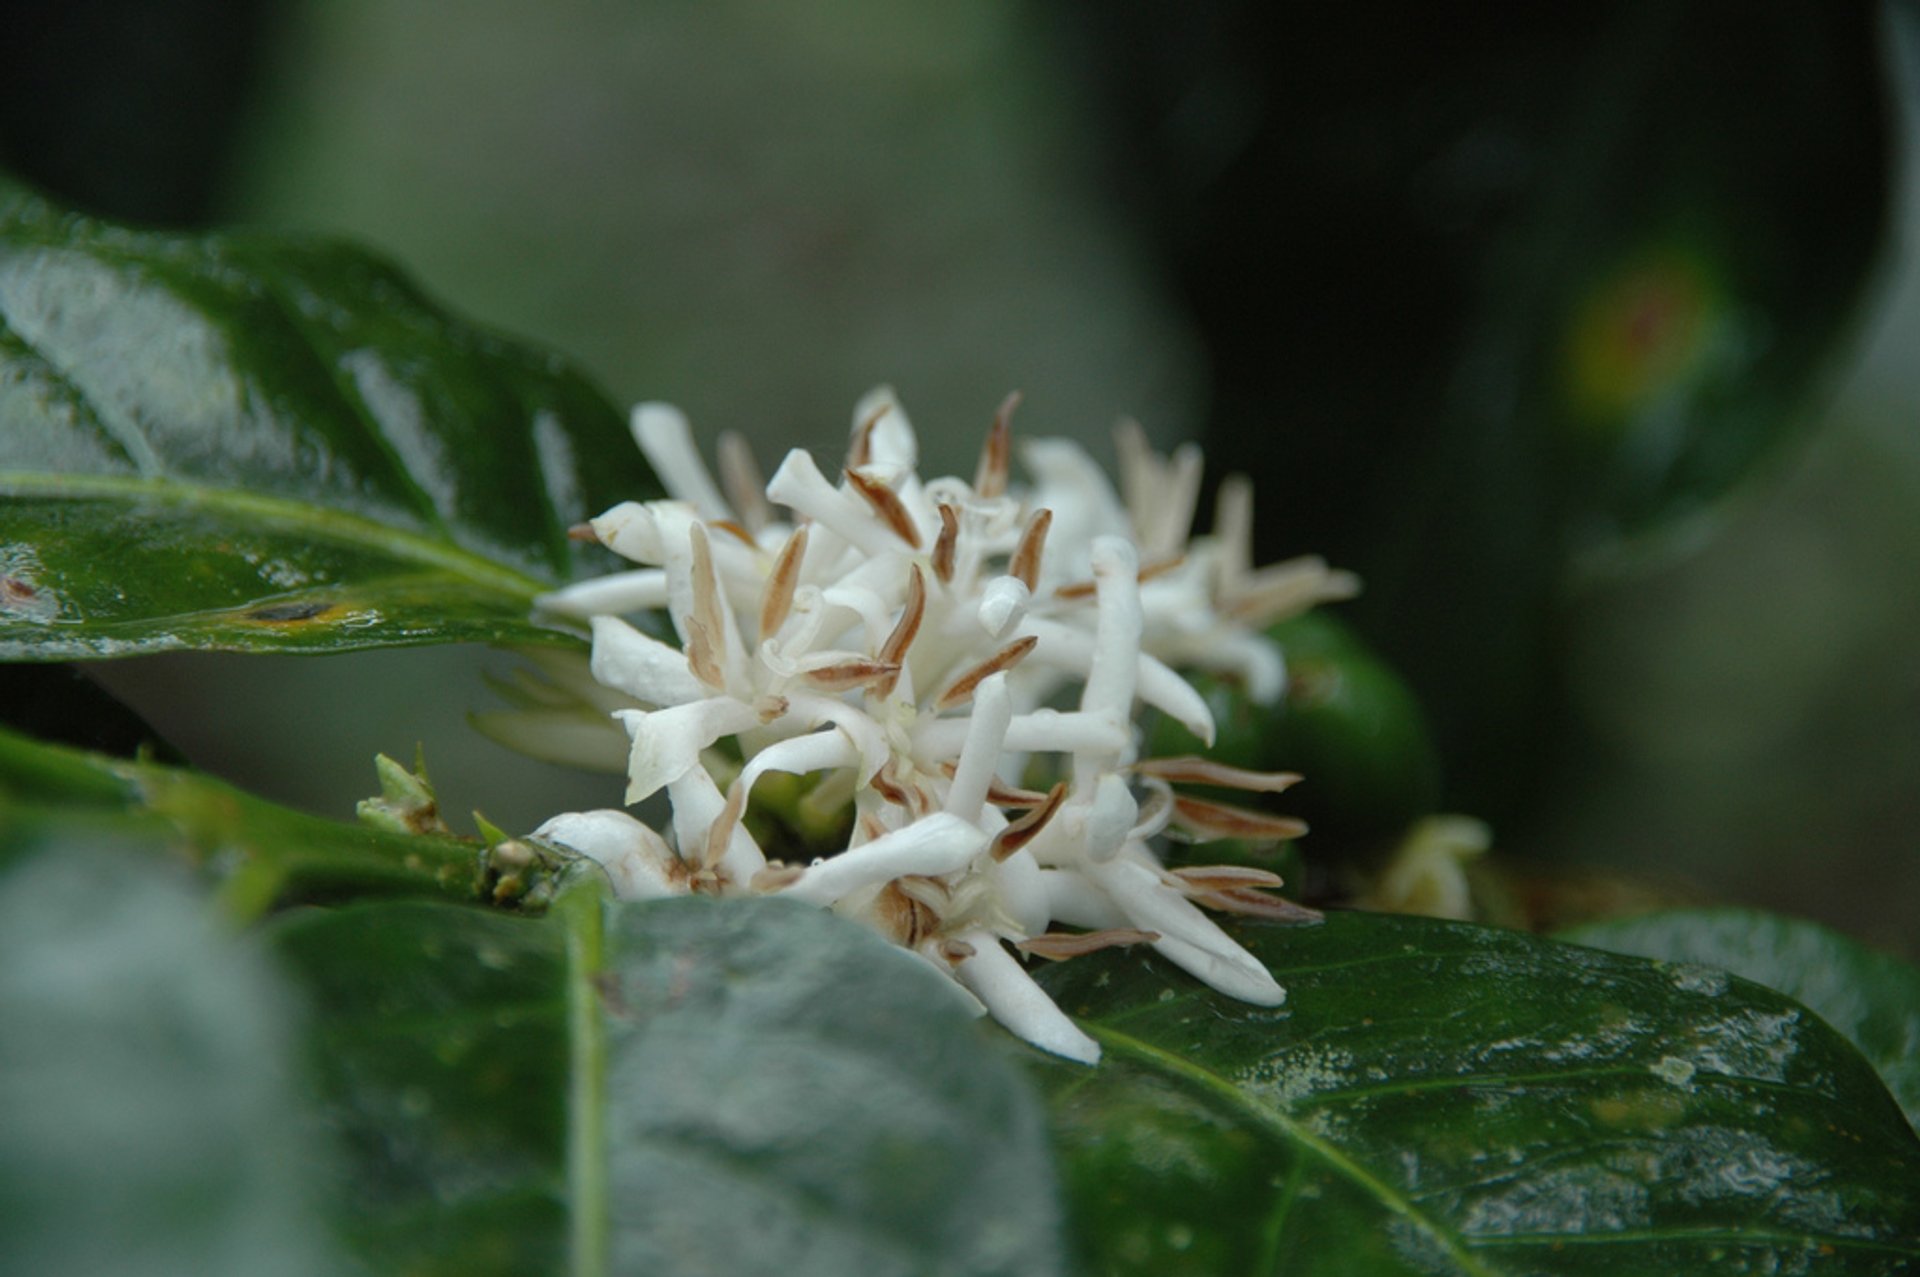 Flowering of Kenya Coffee Plants